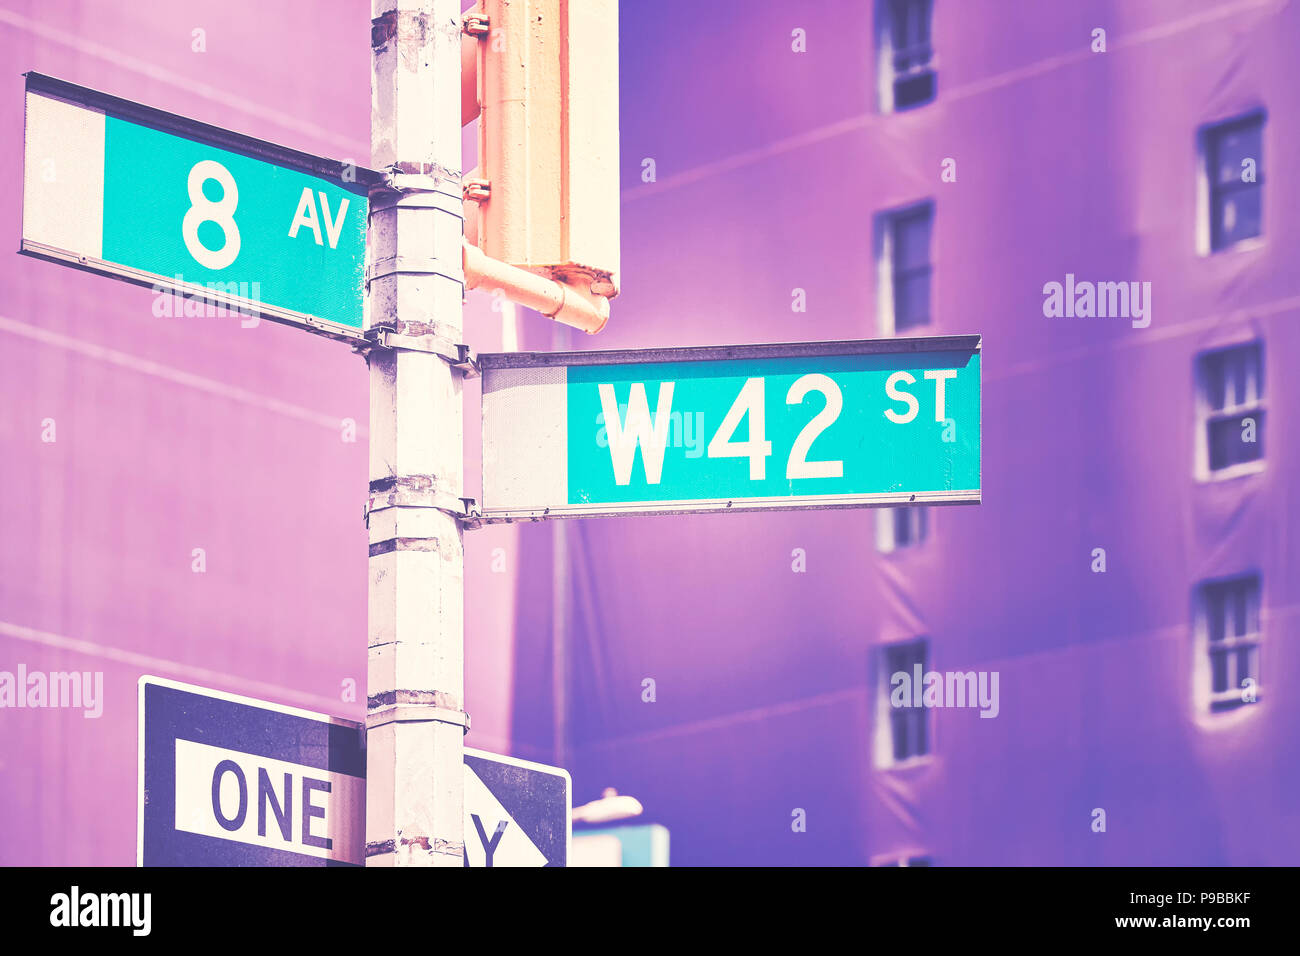 Manhattan West 42 Street e la 8th Avenue nome strada segni e colori immagine stilizzata, New York City, Stati Uniti d'America. Foto Stock